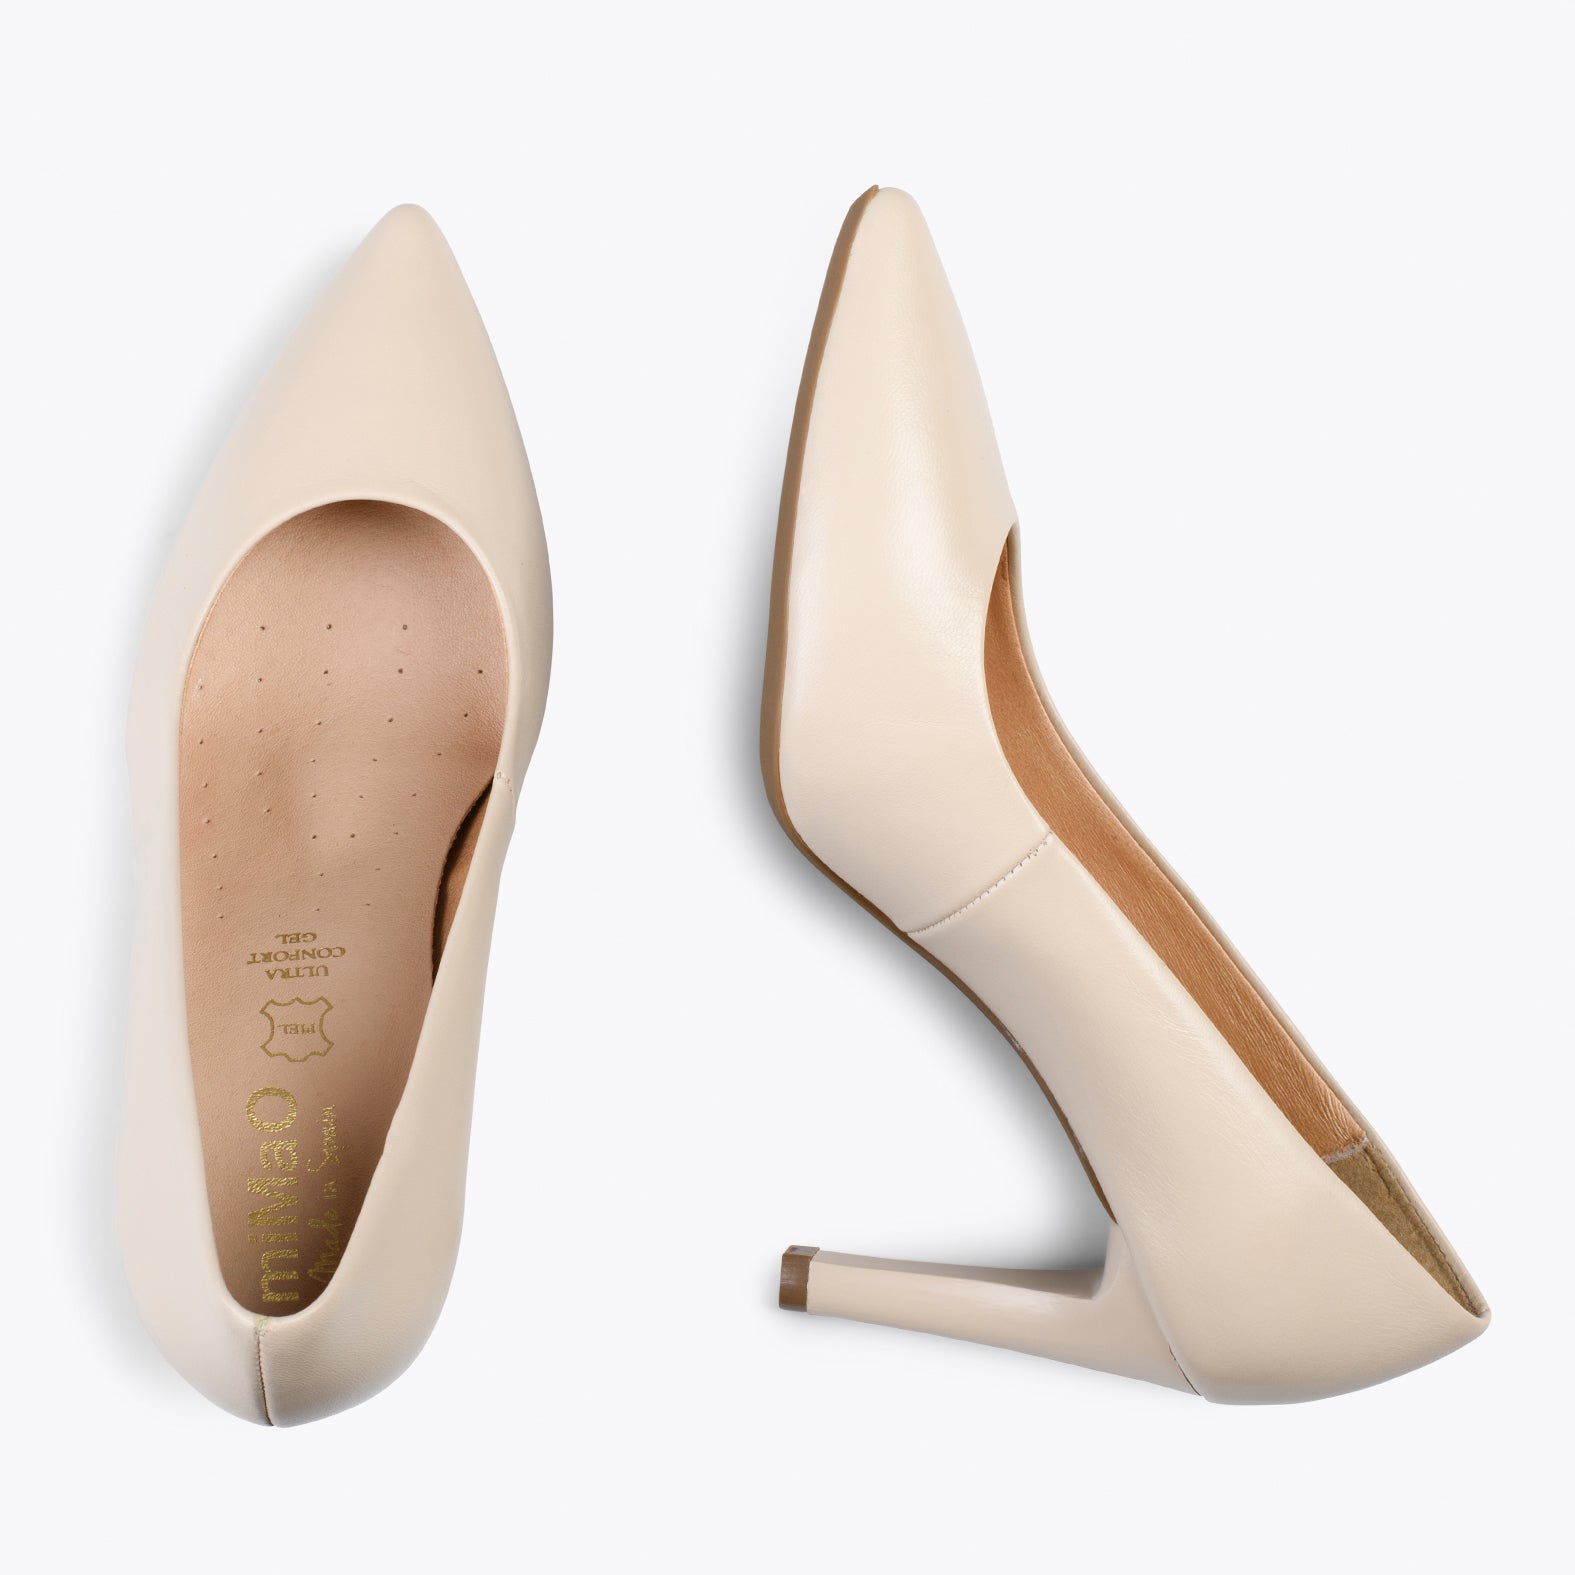 GLAM – BEIGE elegant high heels